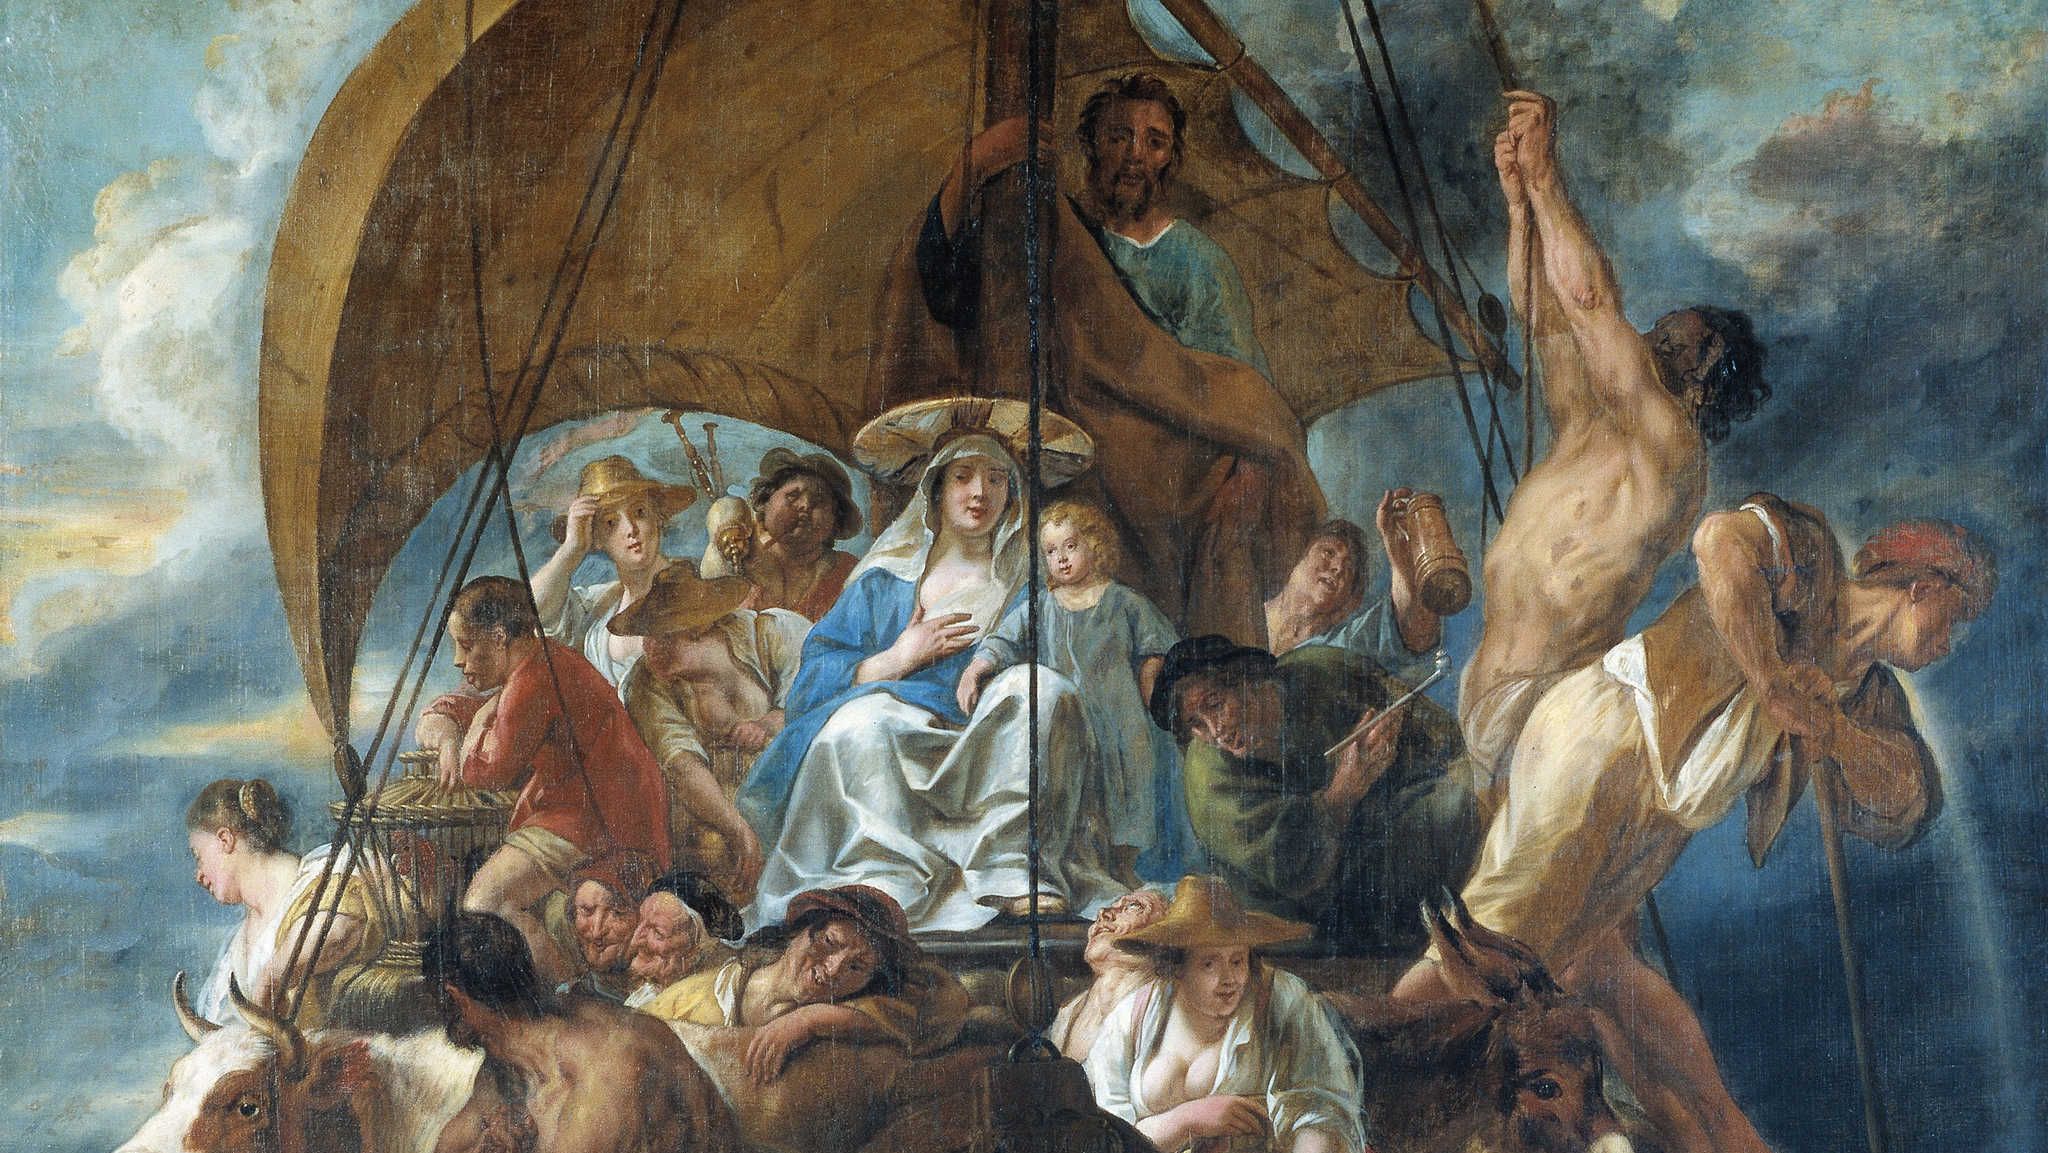 Йорданс Якоб. Святое семейство с людьми и животными в лодке. 1652